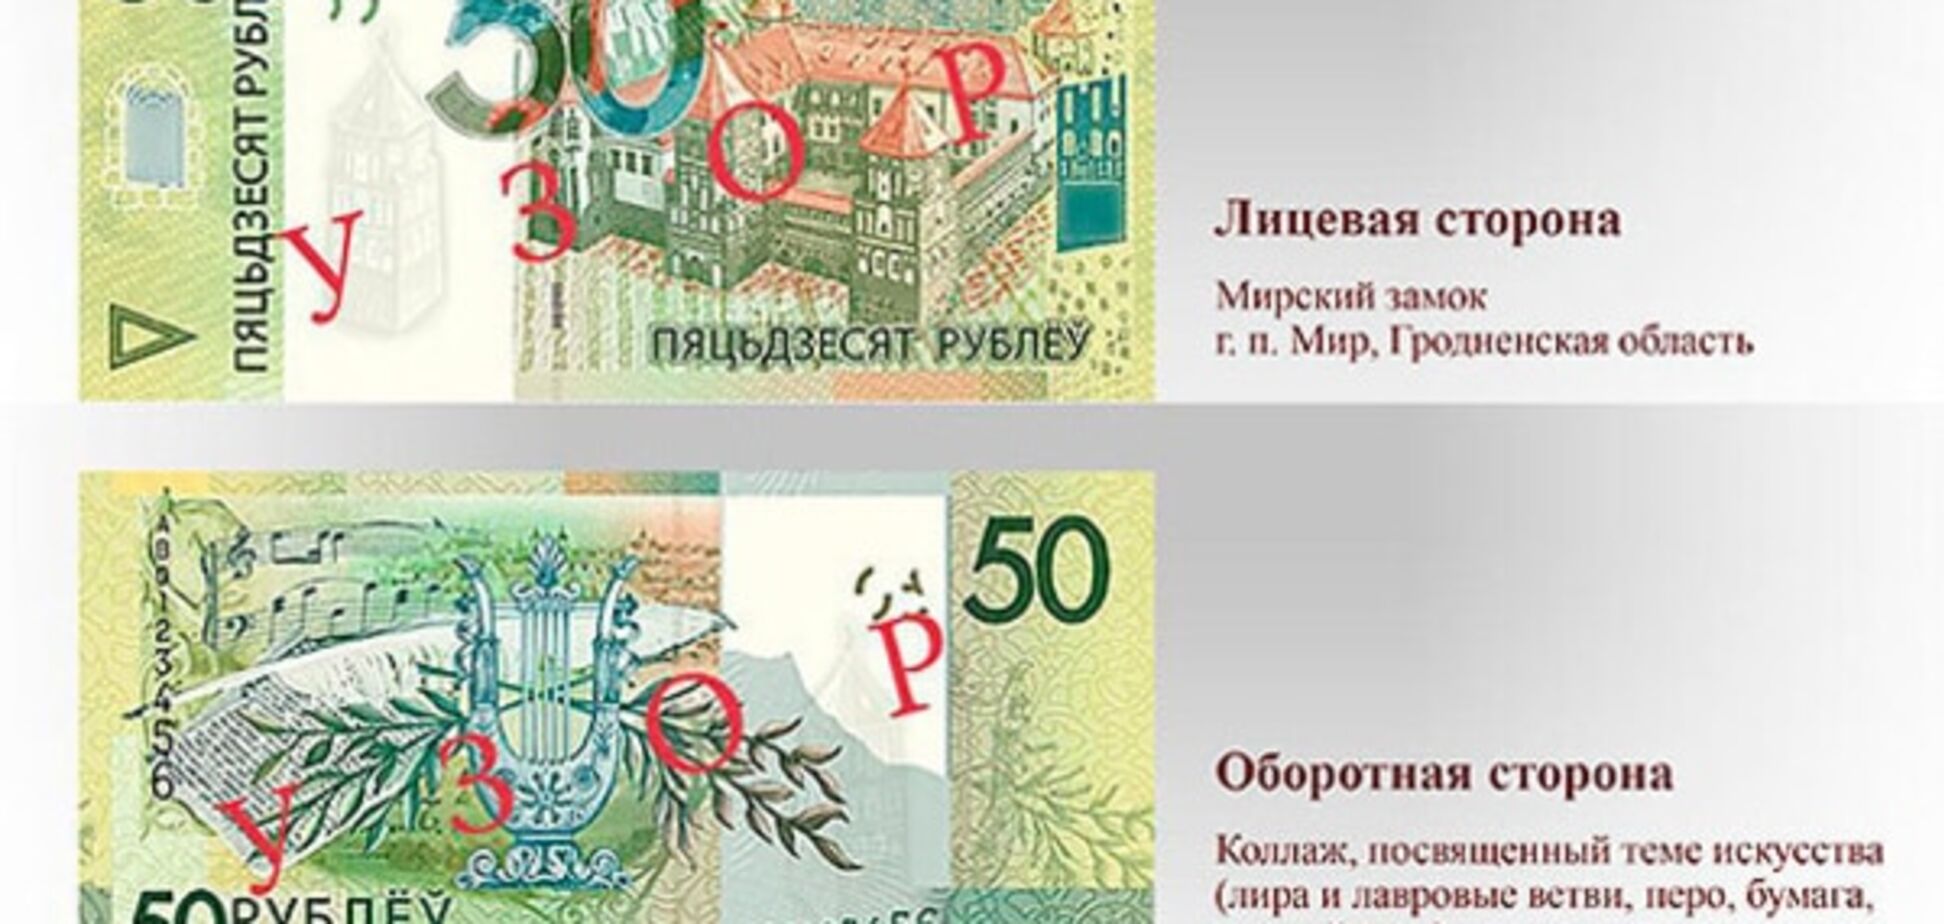 В Беларуси новые банкноты напечатали с орфографической ошибкой